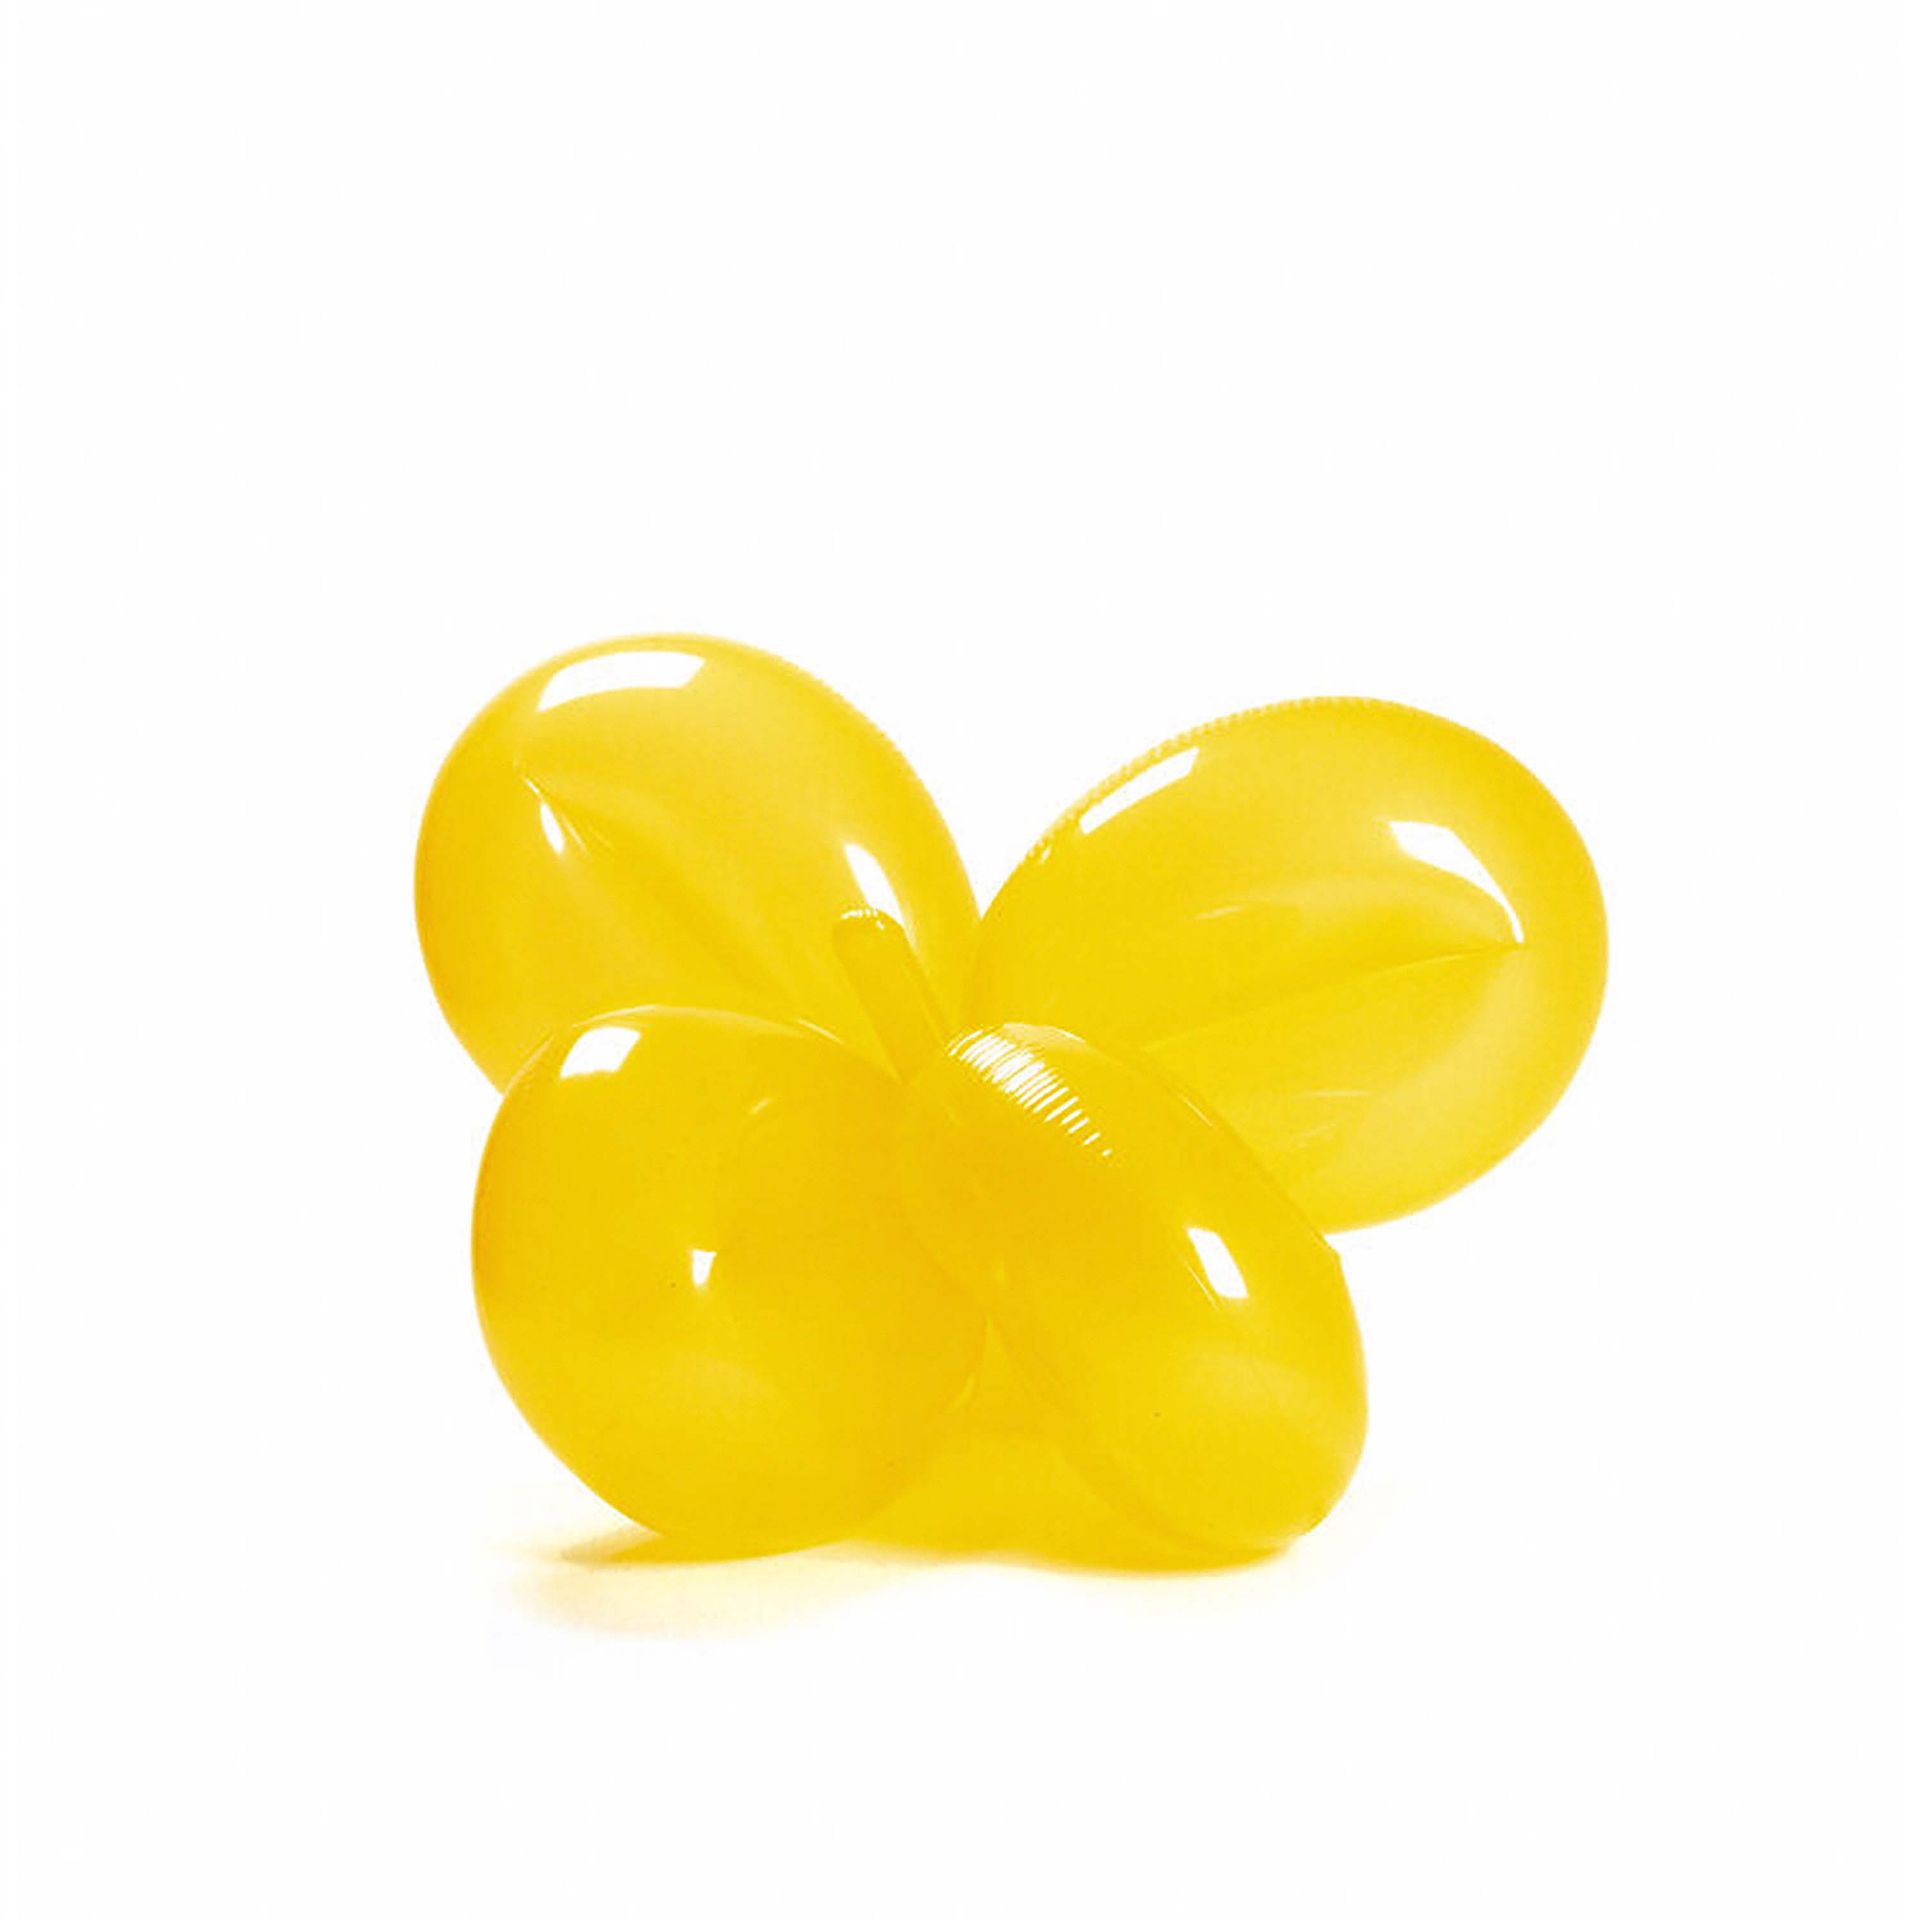 Jeff Koons: Inflatable Balloon Flower (Yellow) (für Parkett 50/51)